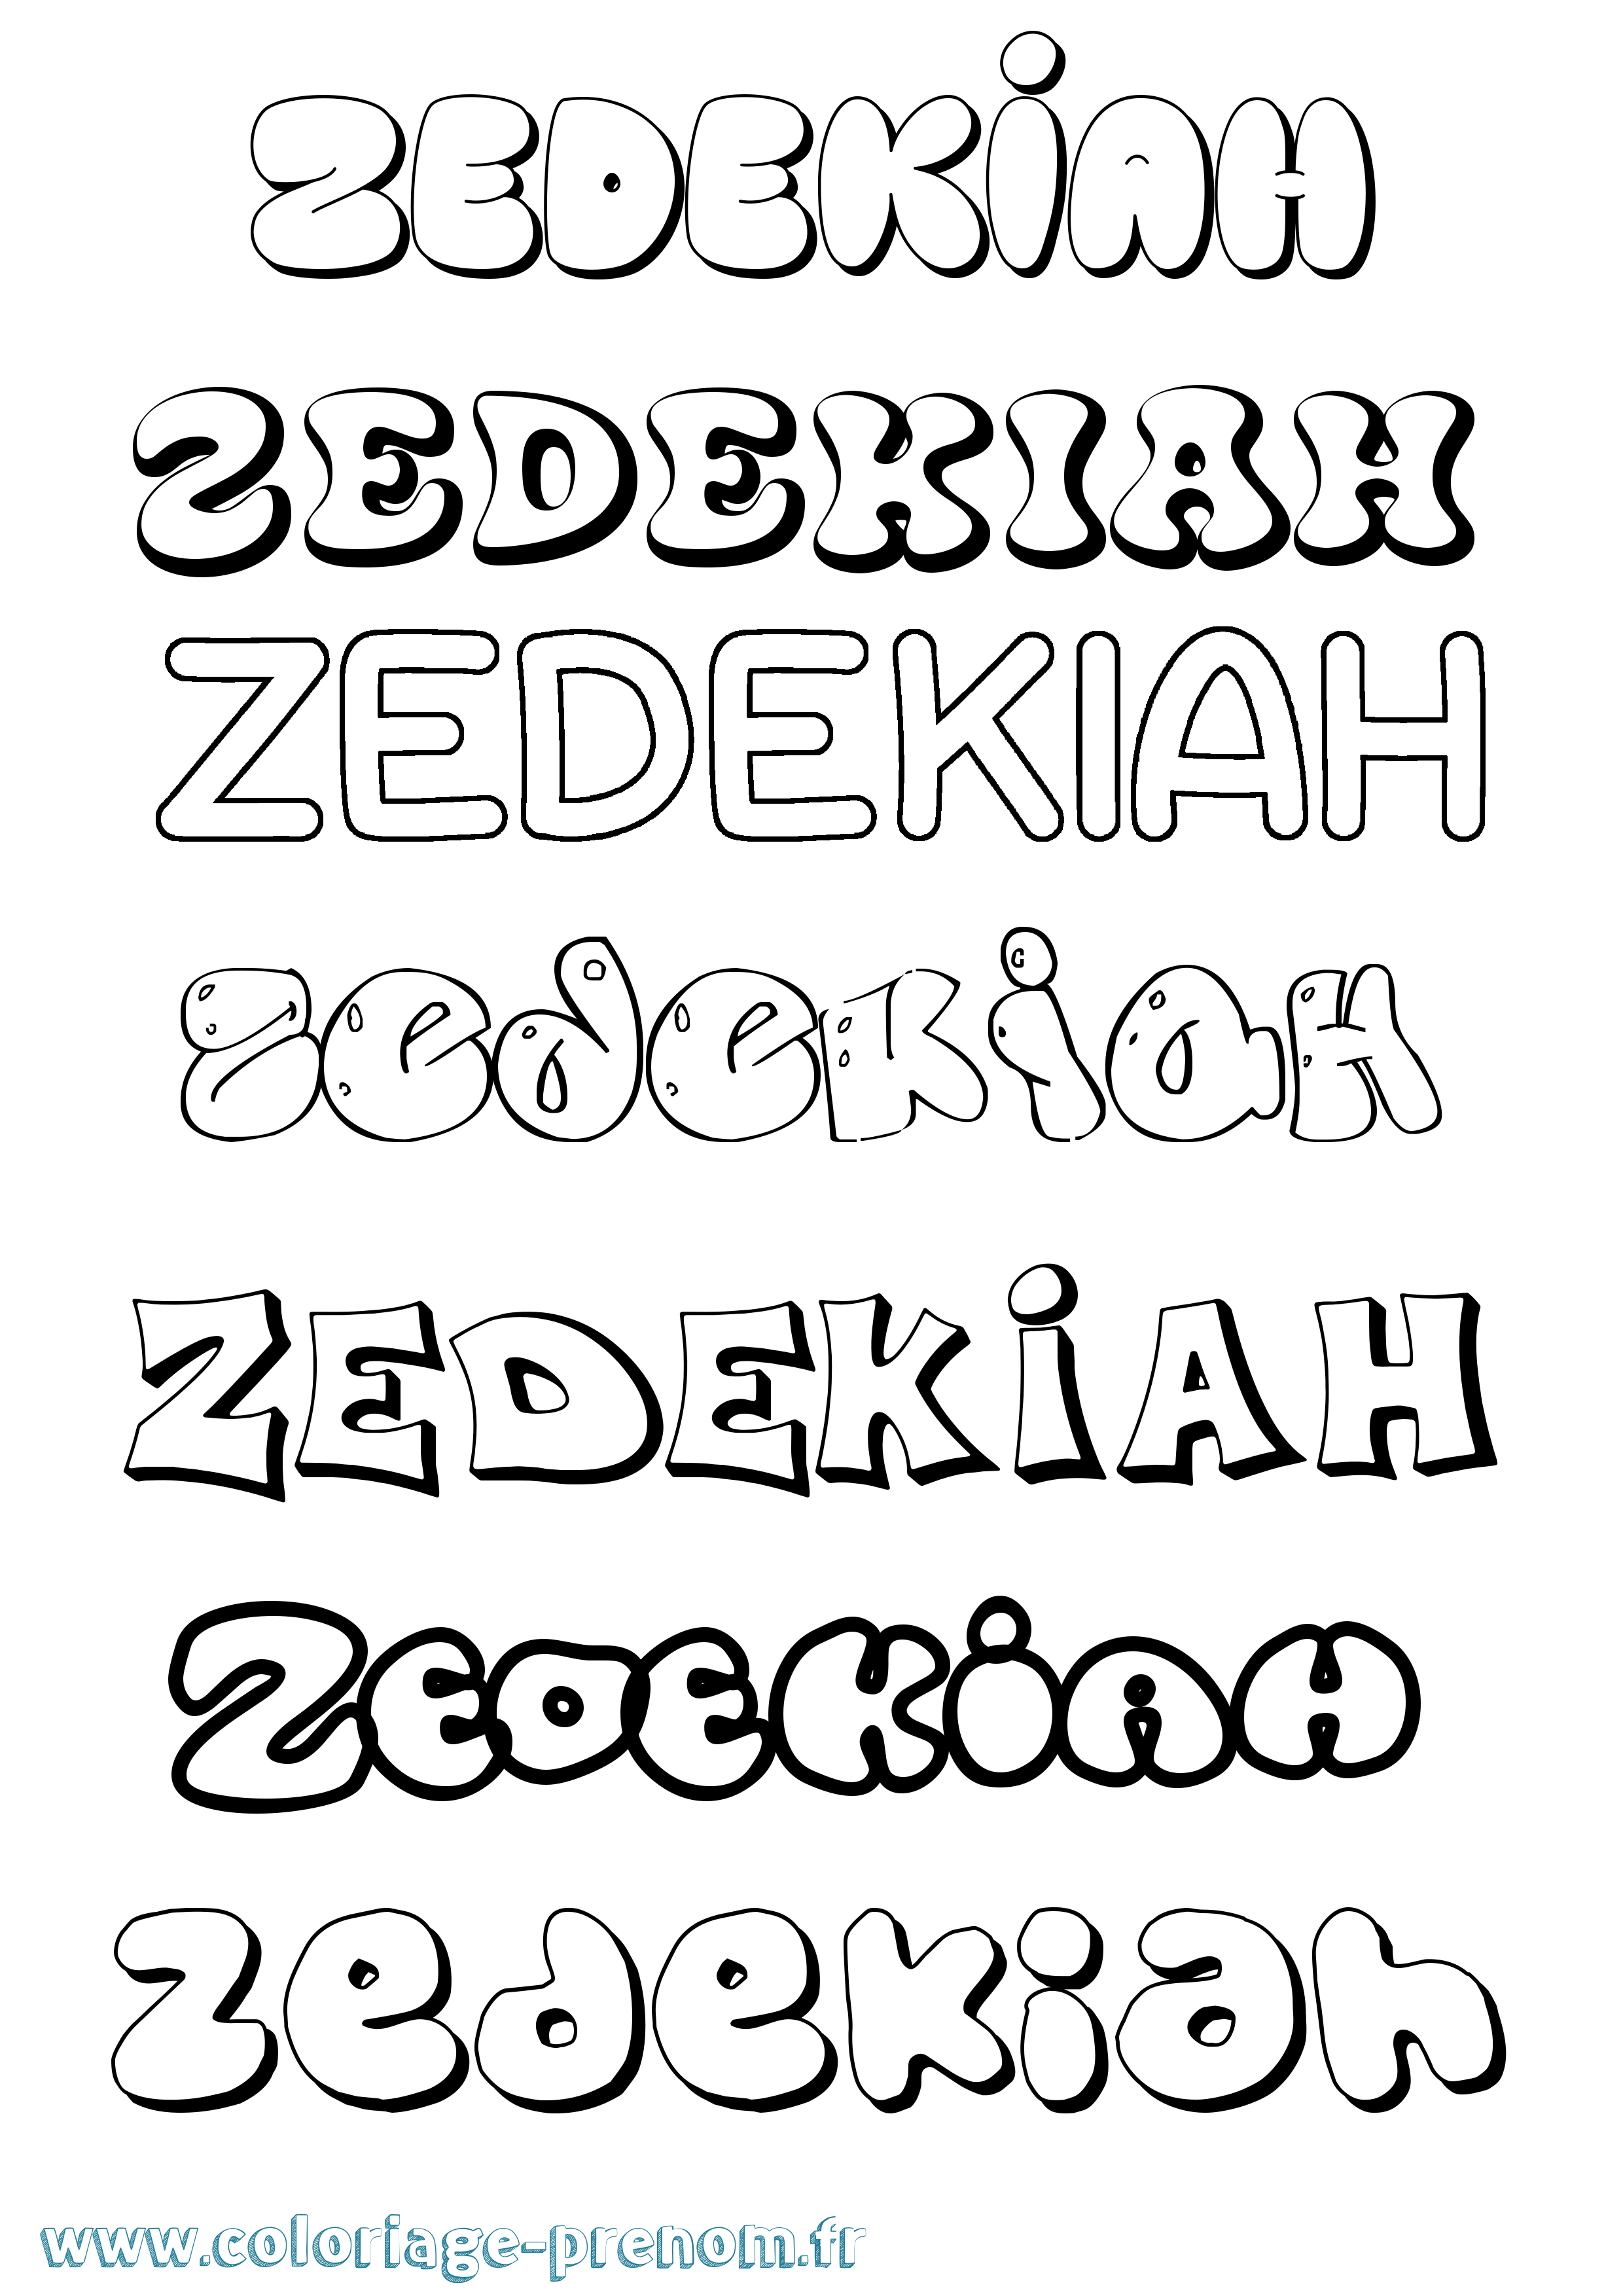 Coloriage prénom Zedekiah Bubble